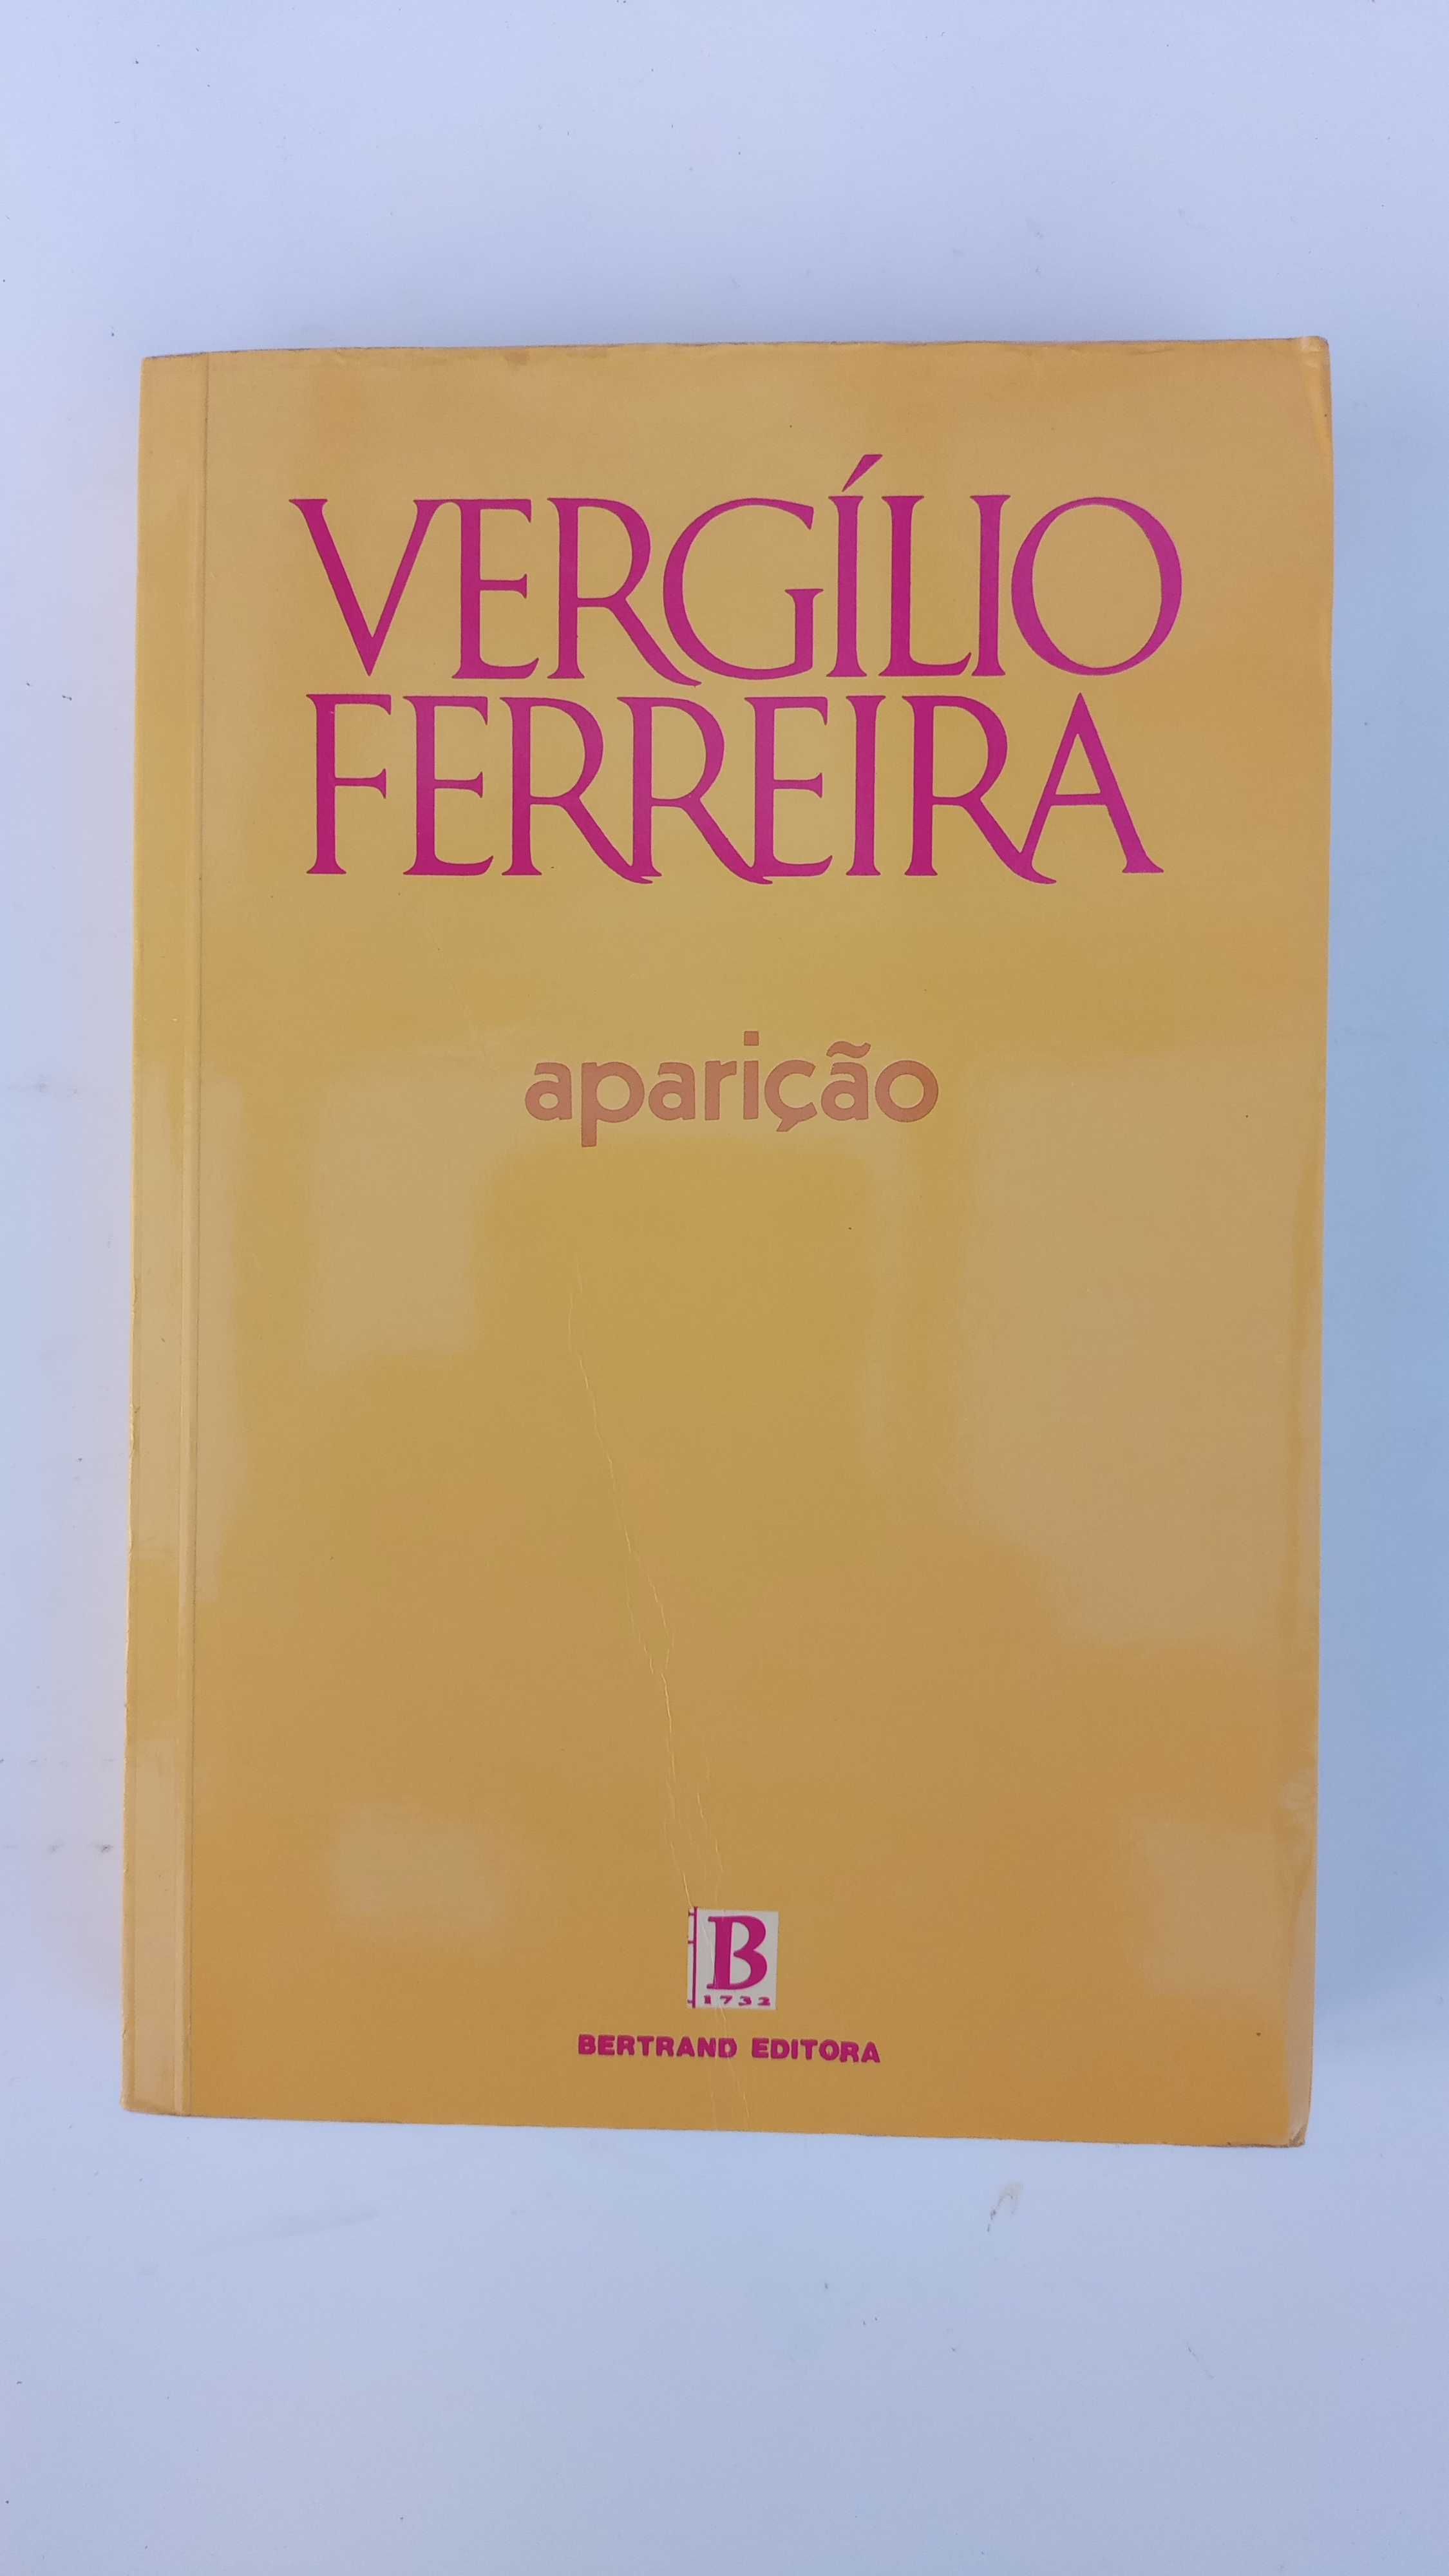 Aparição de Vergílio Ferreira